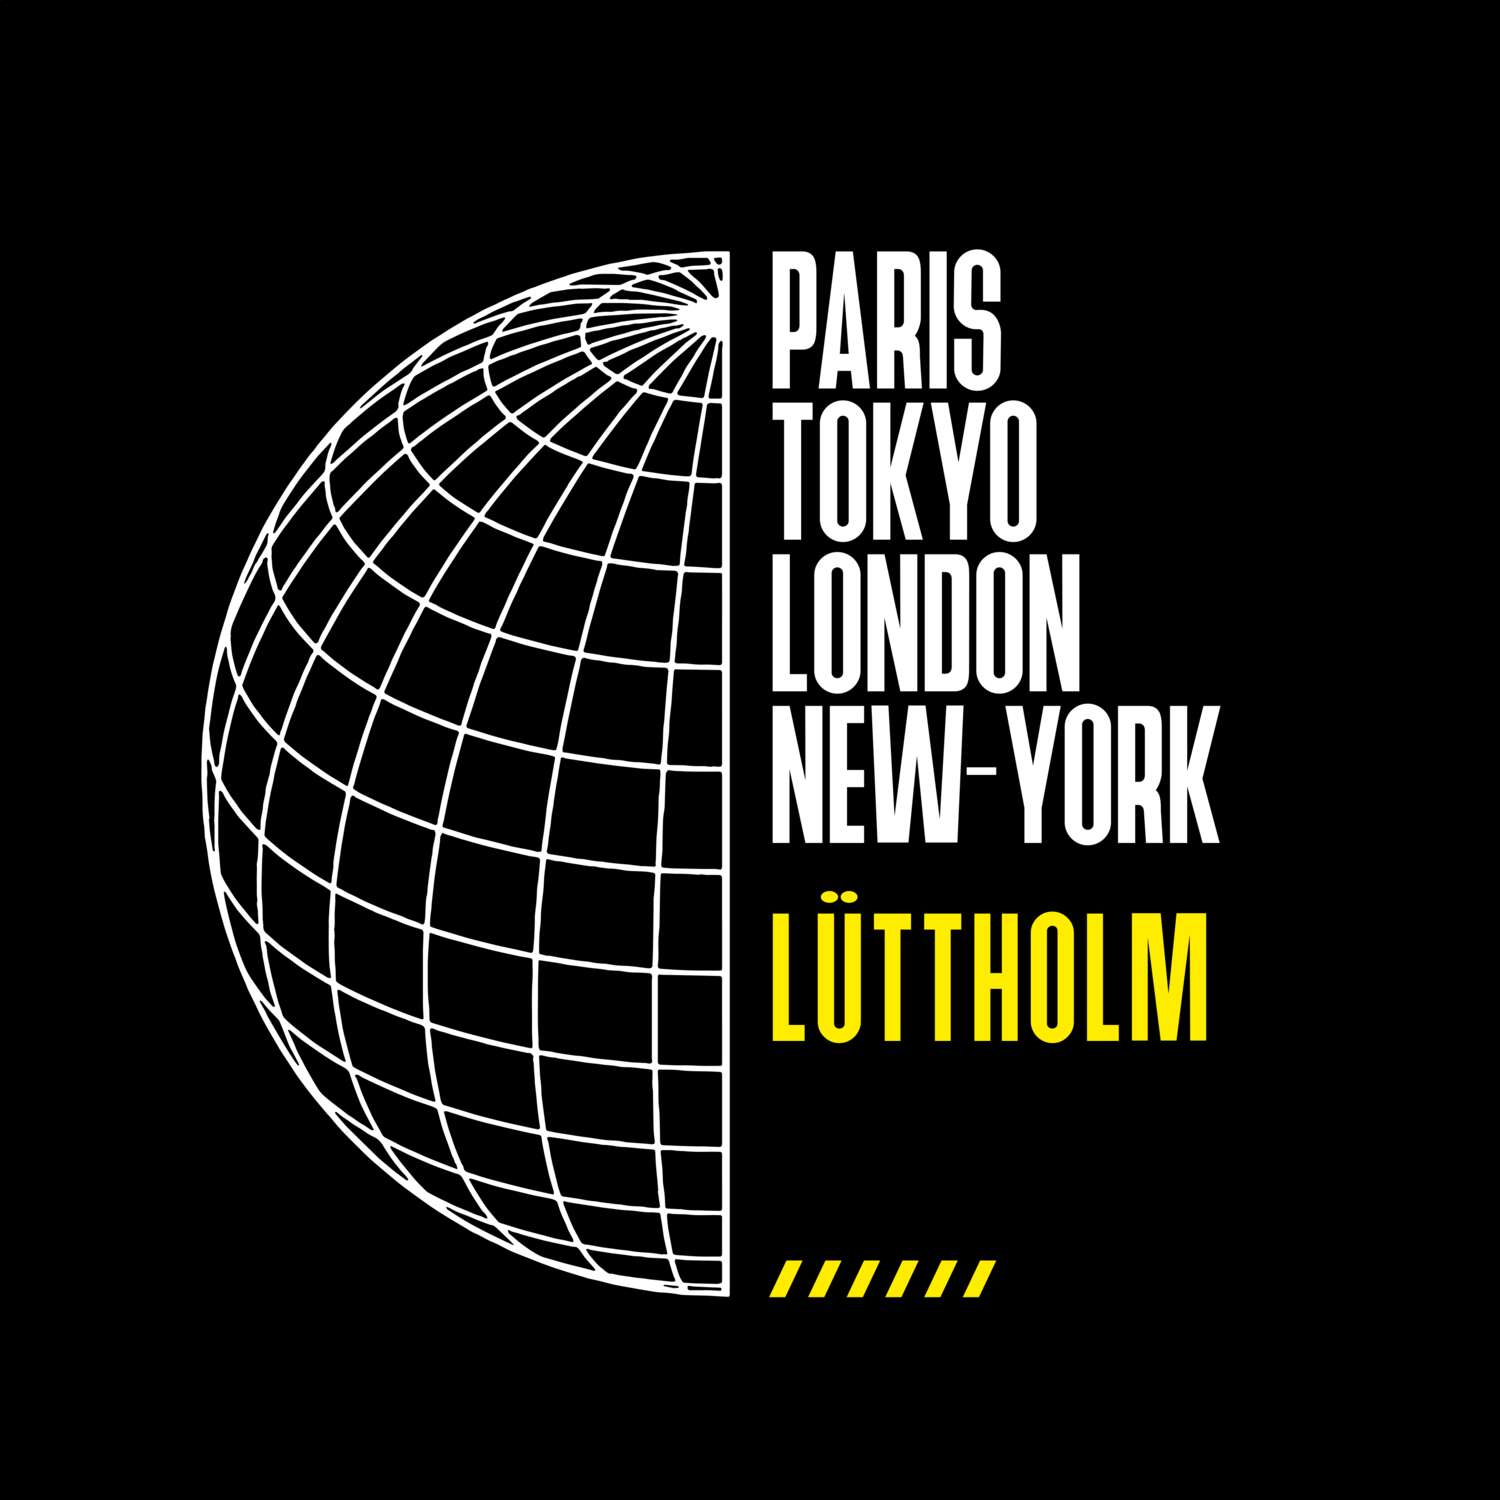 Lüttholm T-Shirt »Paris Tokyo London«